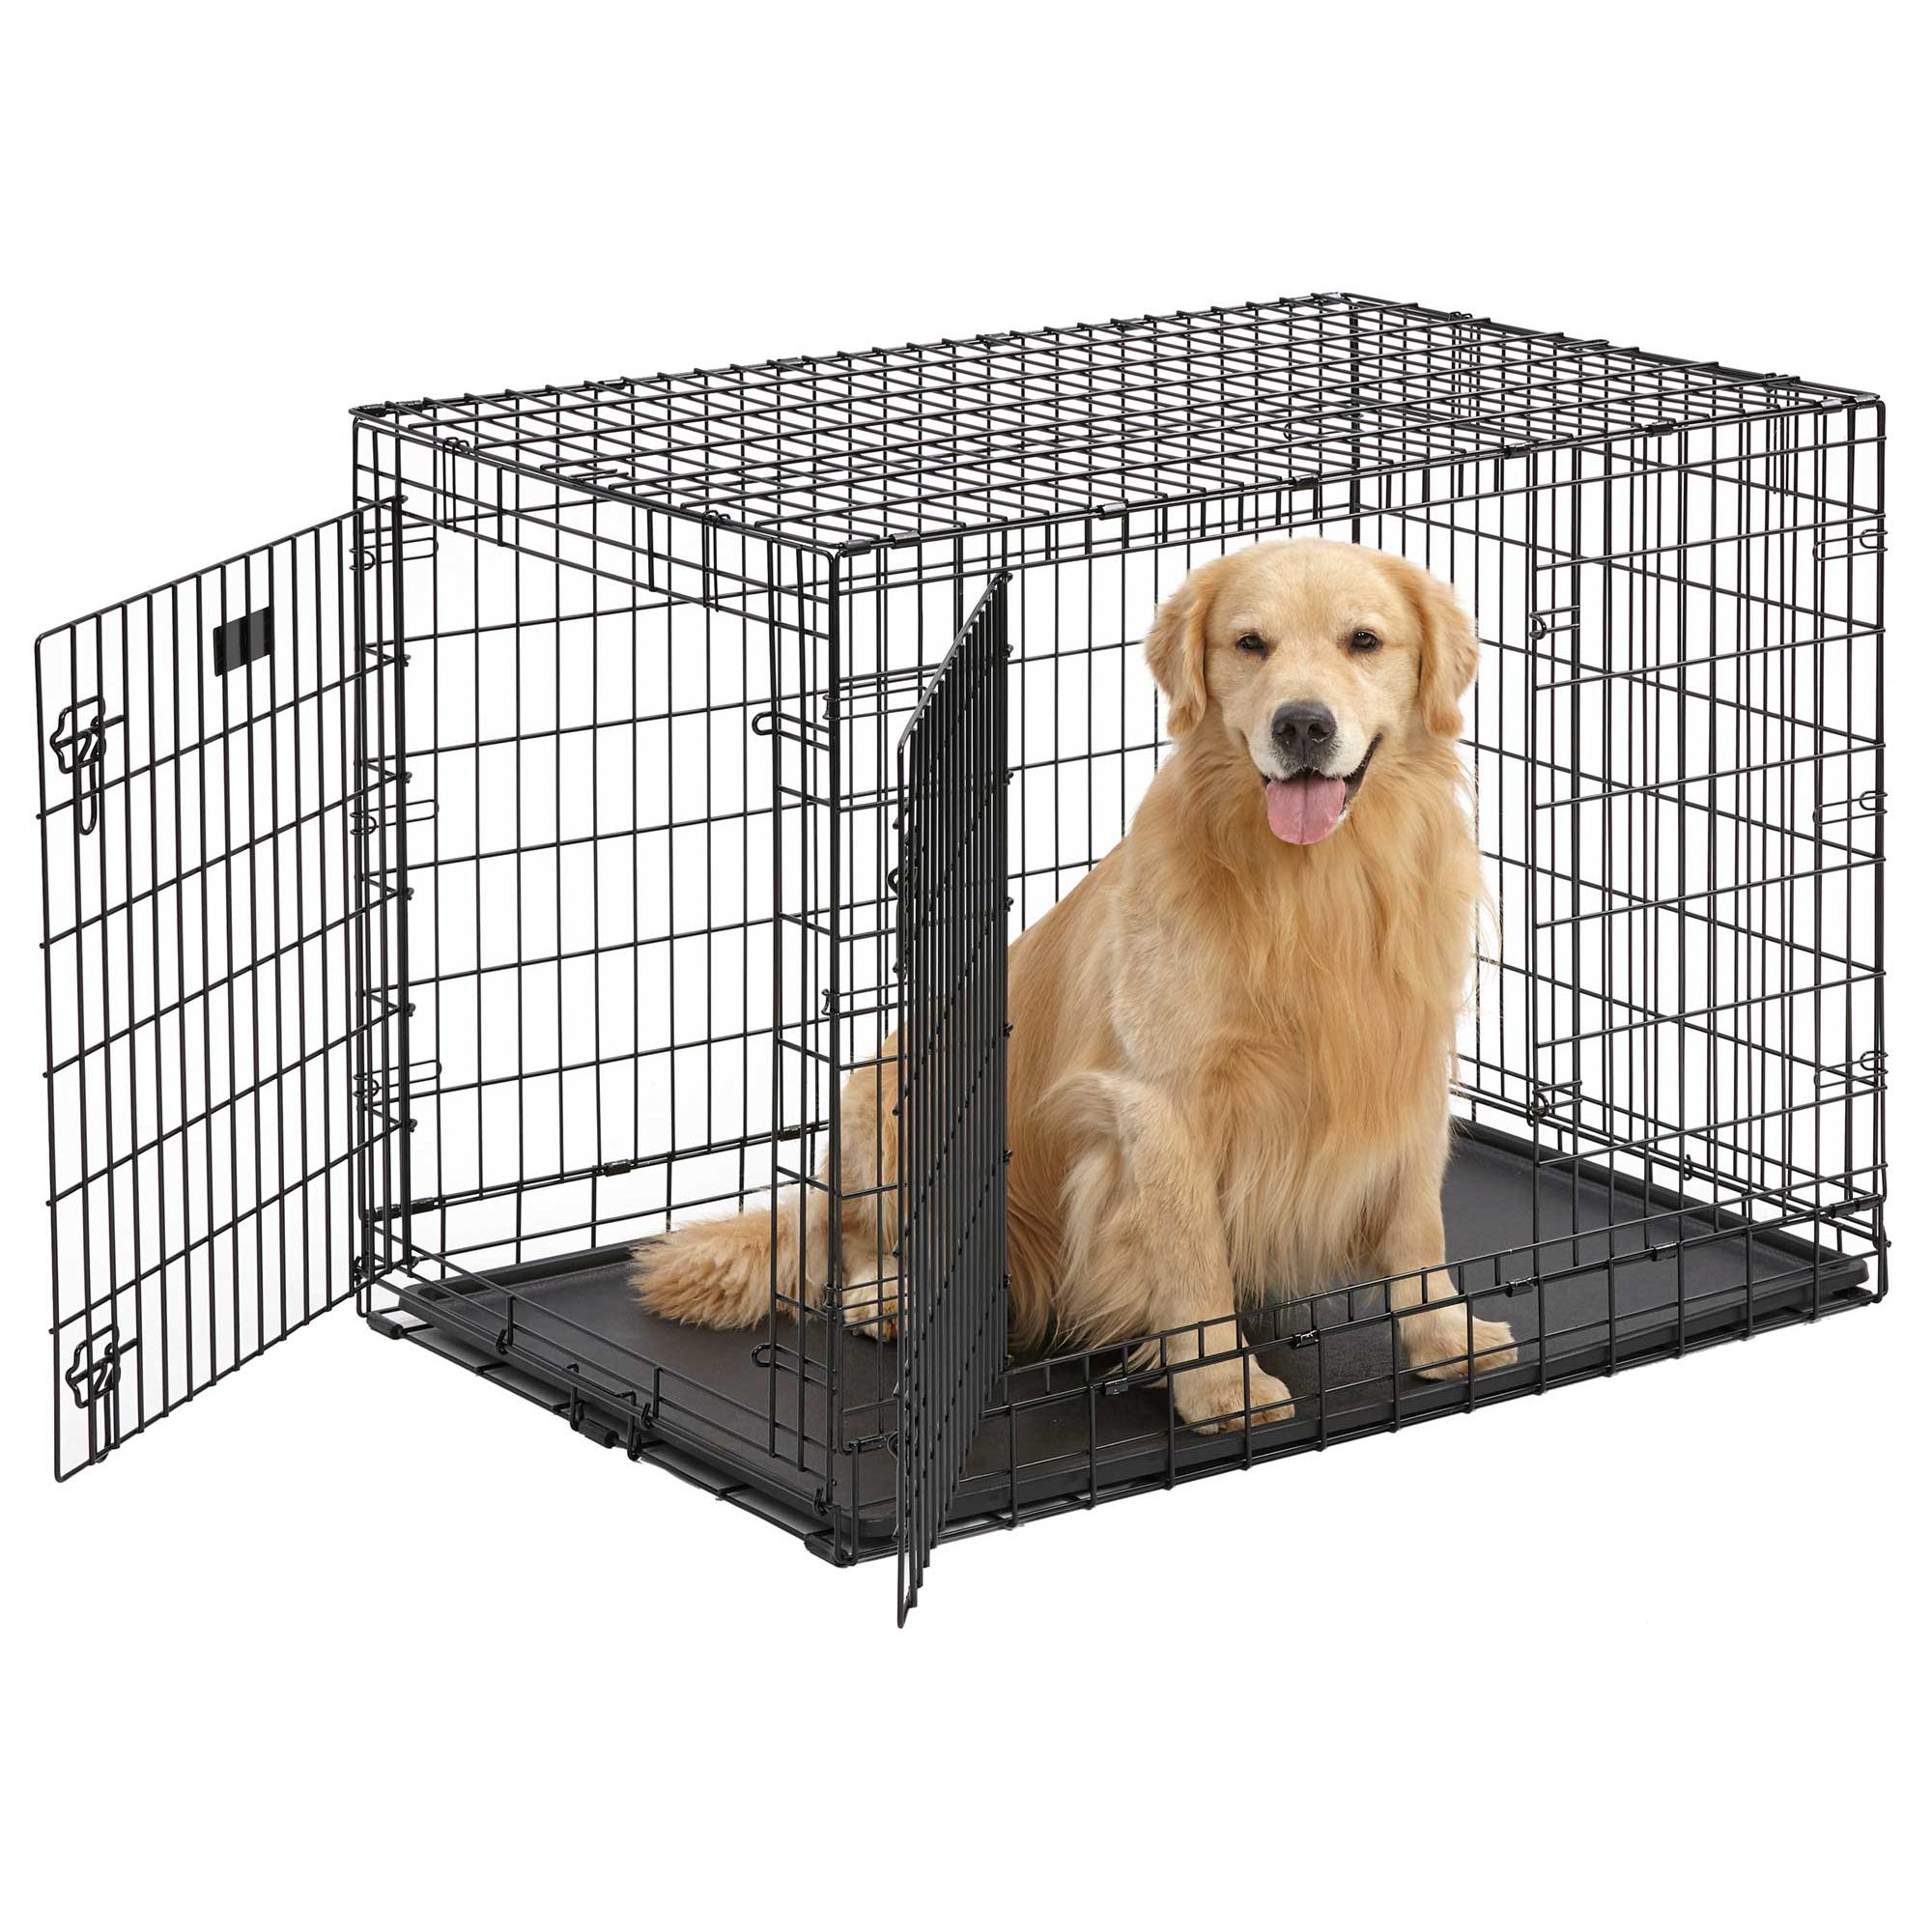 petsmart large dog crate